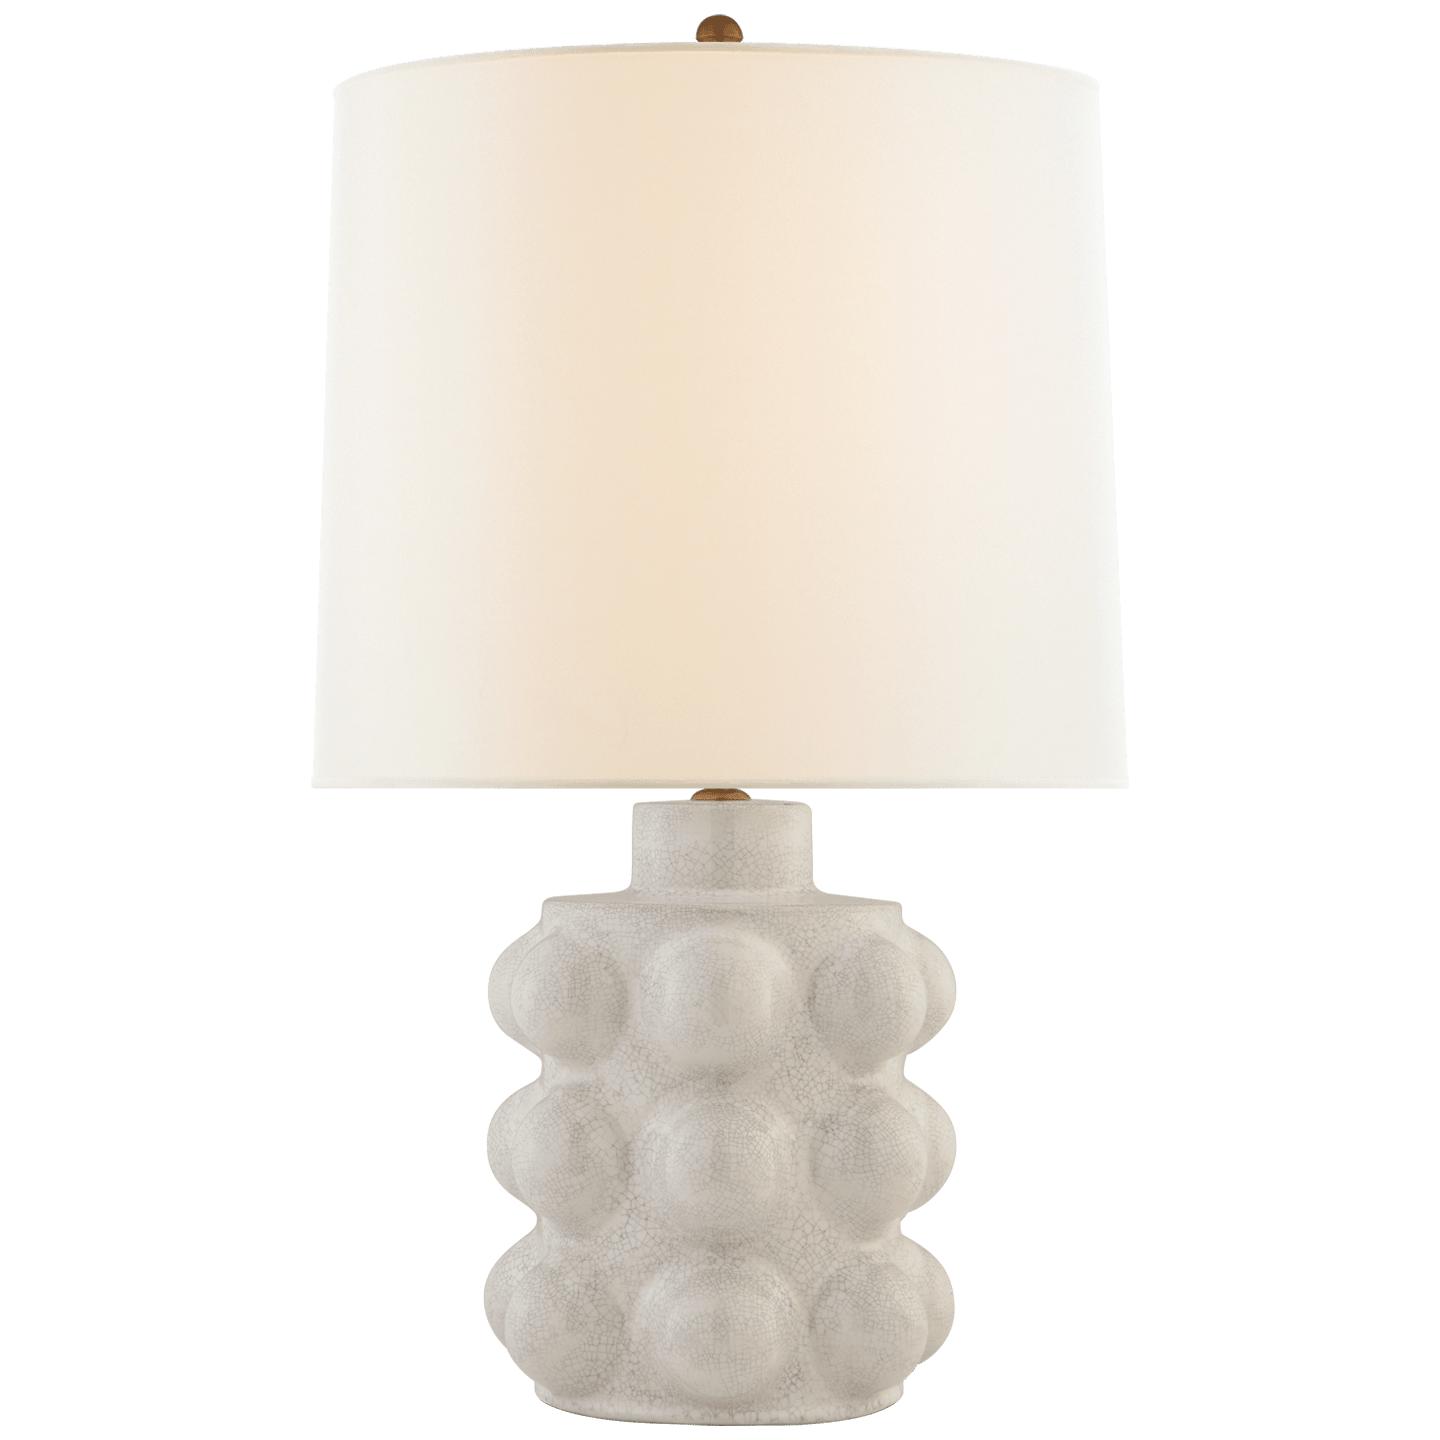 Купить Настольная лампа Vedra Medium Table Lamp в интернет-магазине roooms.ru